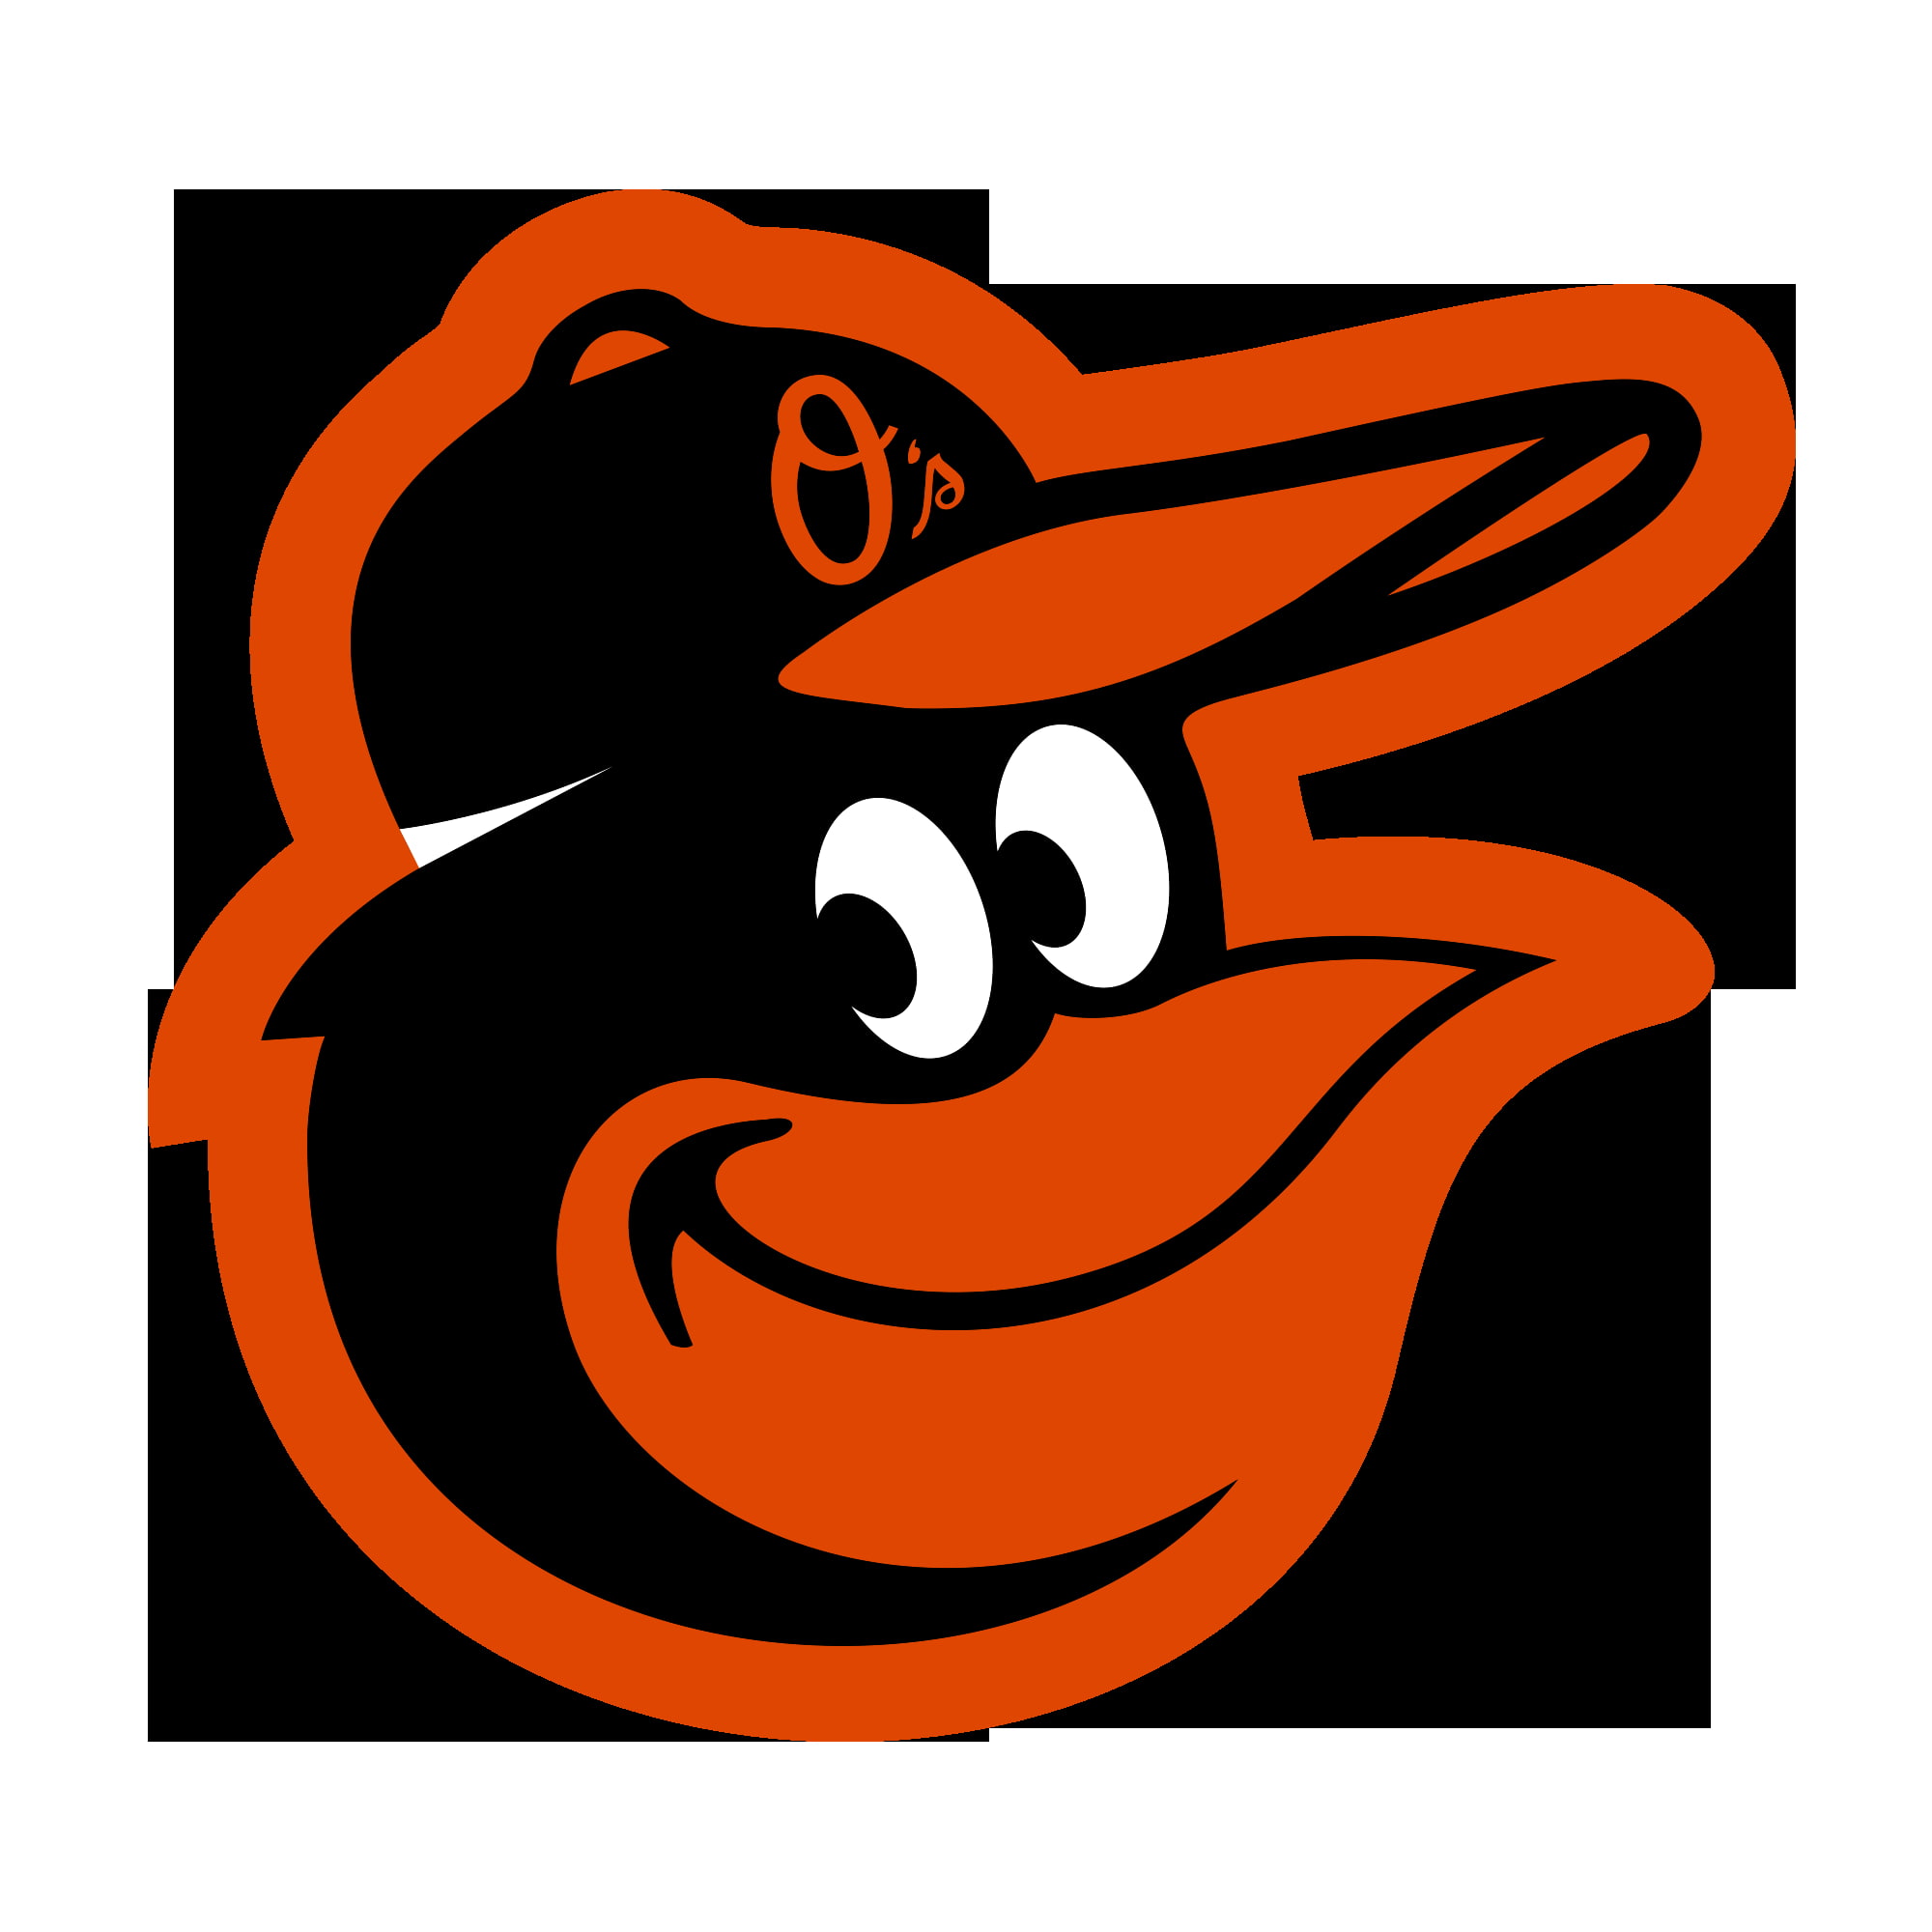 Baltimore Orioles, logotype, Major League Baseball, black color